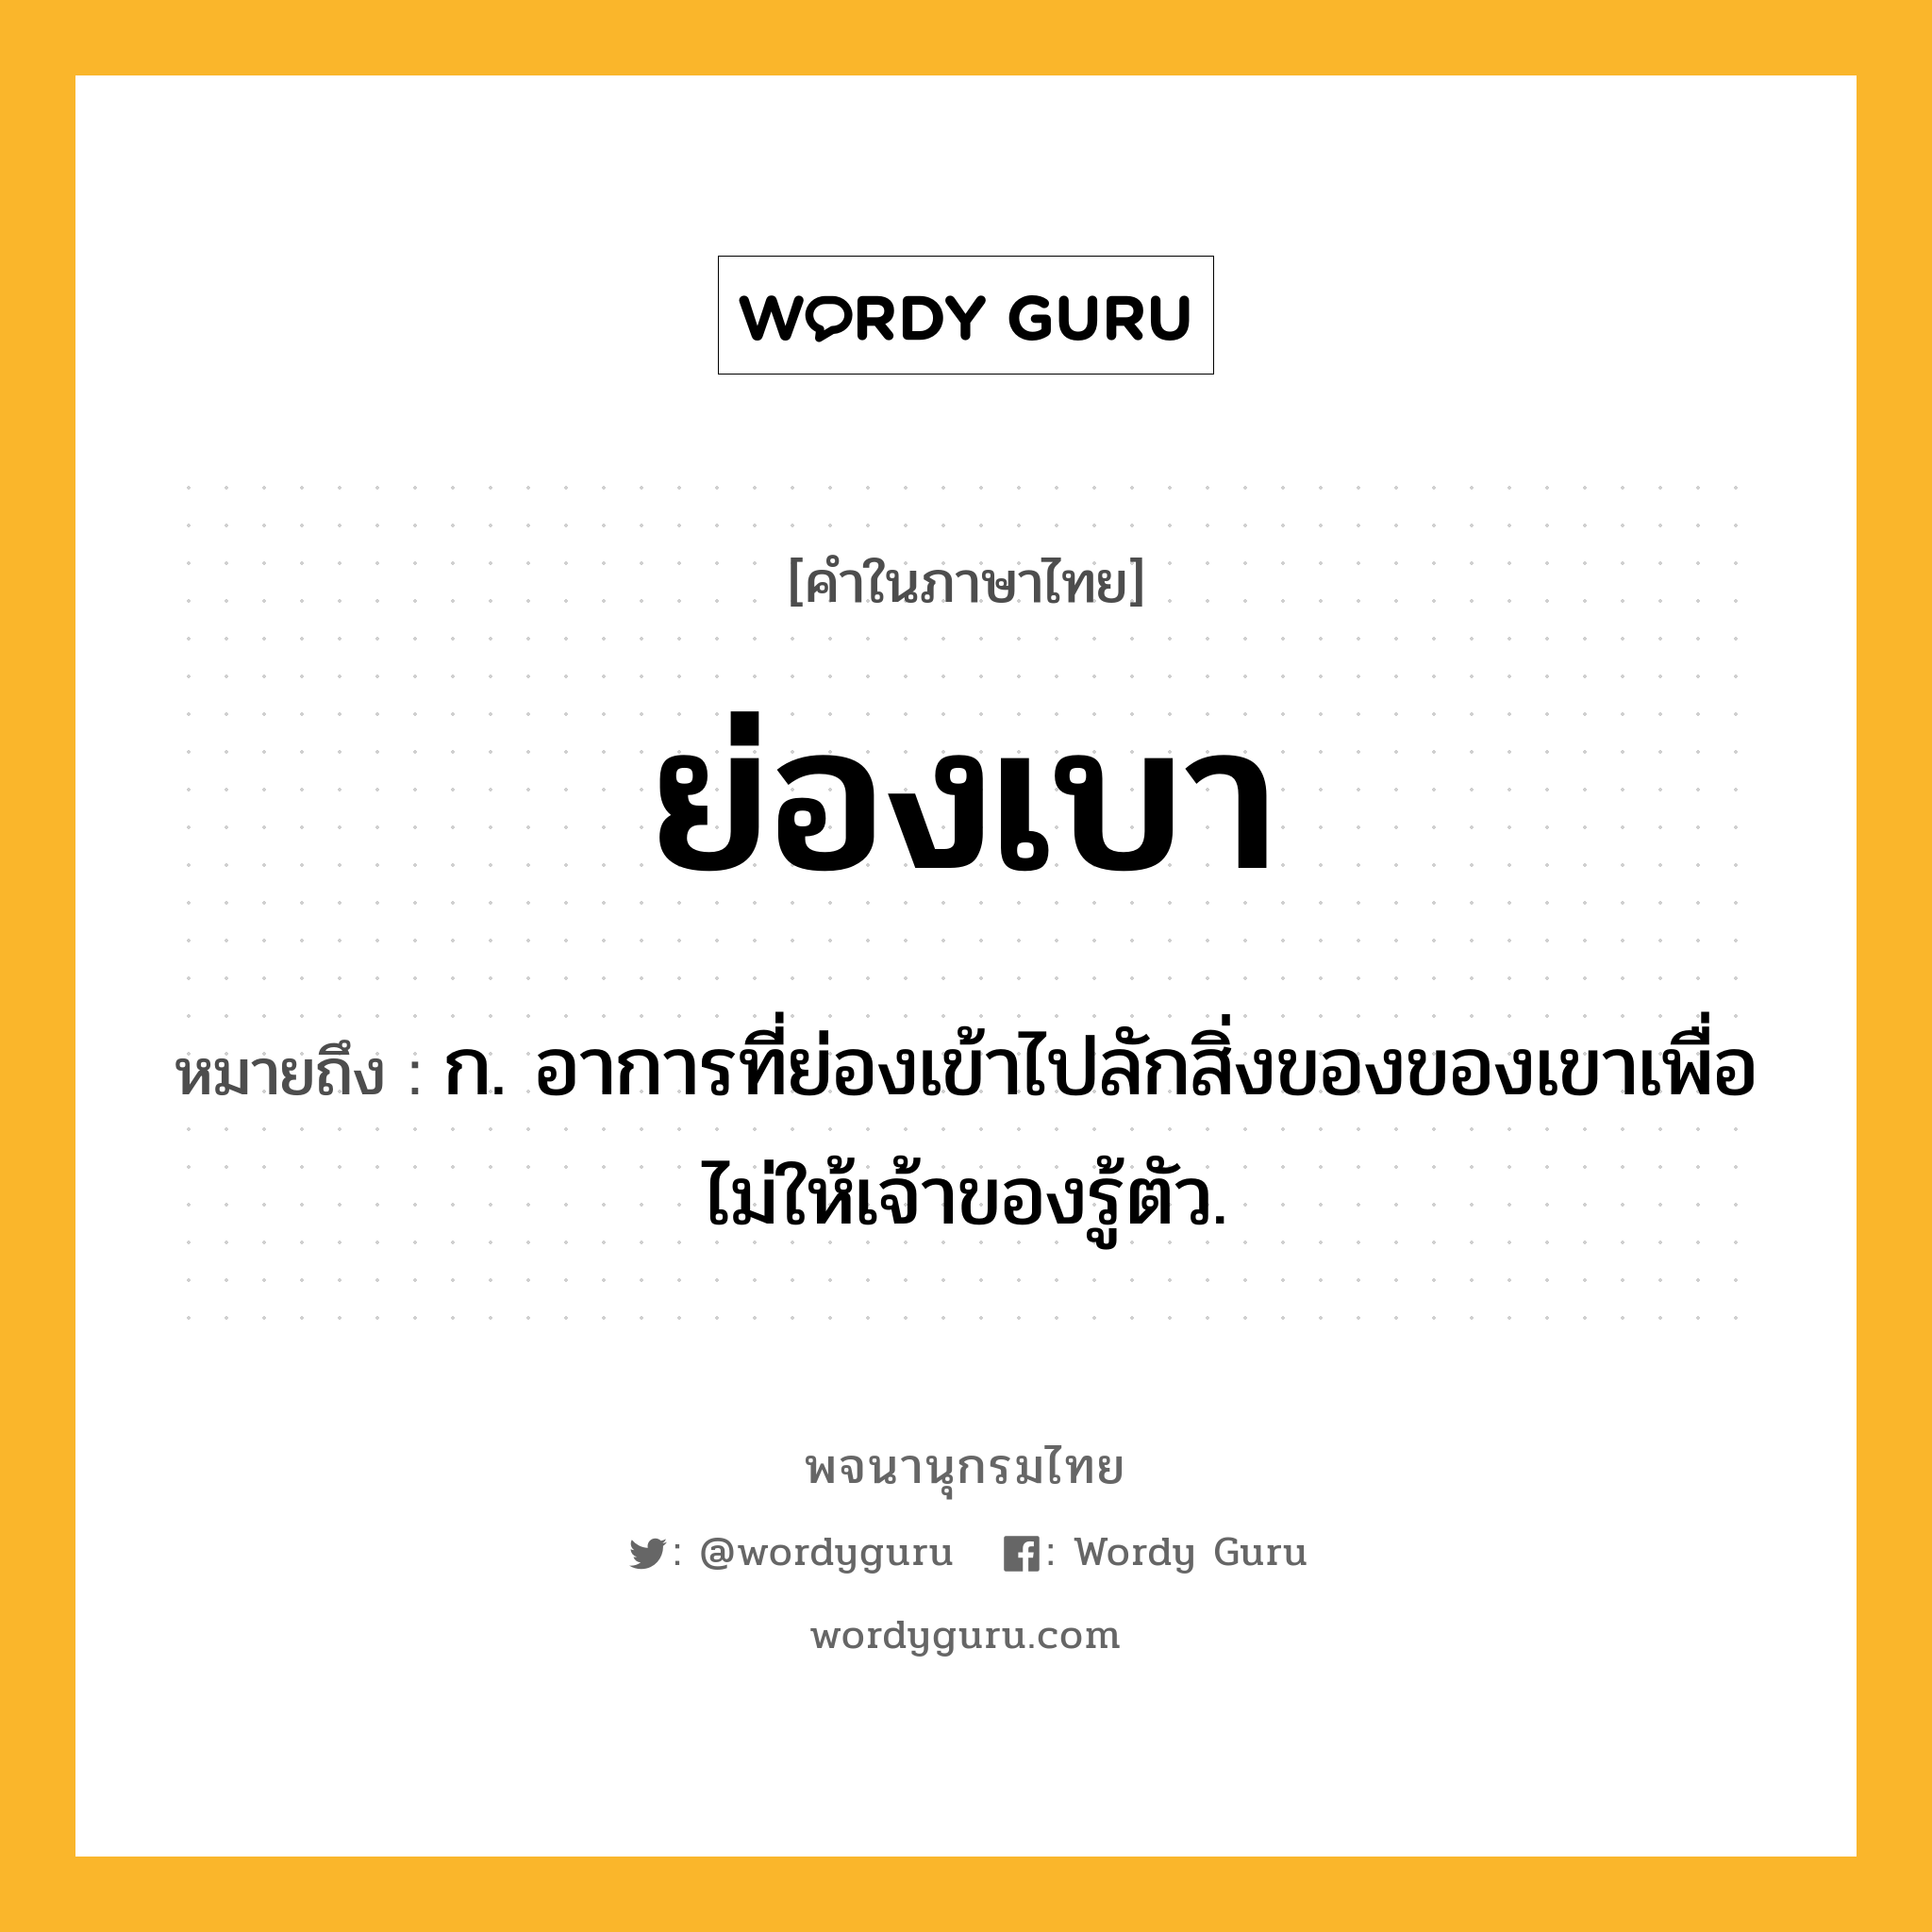 ย่องเบา หมายถึงอะไร?, คำในภาษาไทย ย่องเบา หมายถึง ก. อาการที่ย่องเข้าไปลักสิ่งของของเขาเพื่อไม่ให้เจ้าของรู้ตัว.